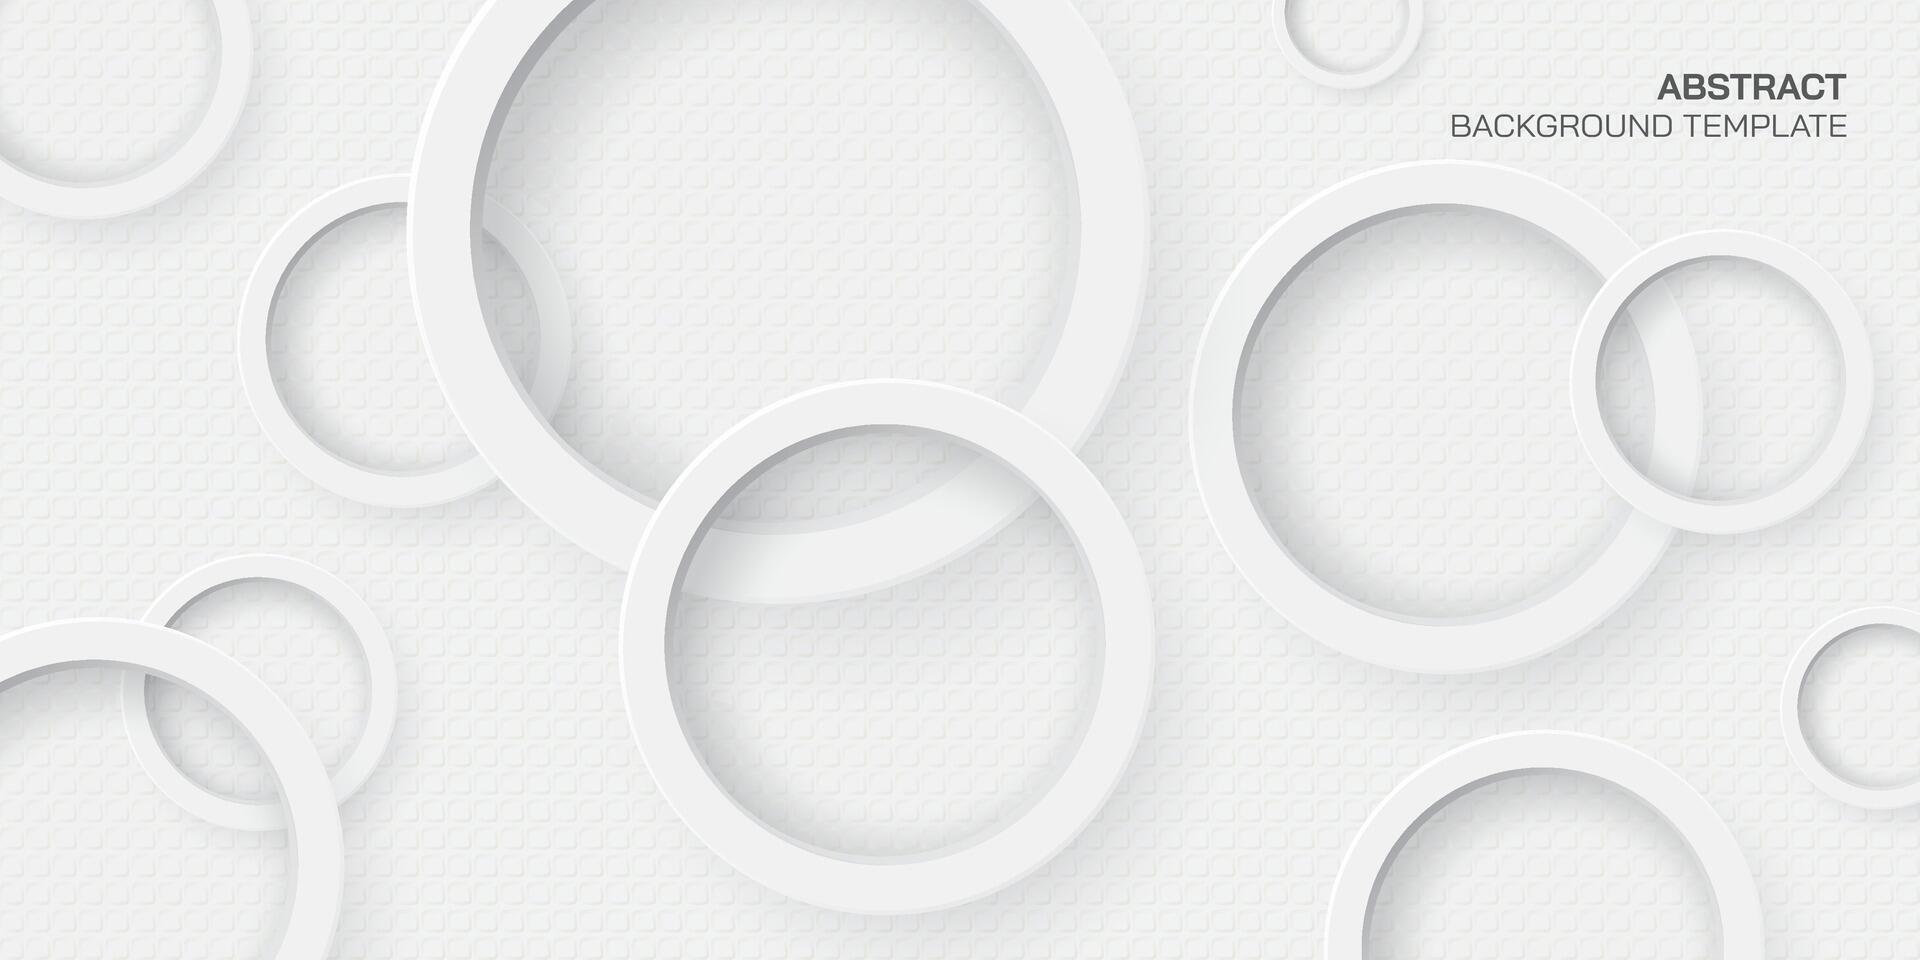 wit hout vrij ongecoat papier achtergrond met 3d cirkel ring papier besnoeiing stijl vector illustratie. wit binding papier achtergrond met cirkel ring.